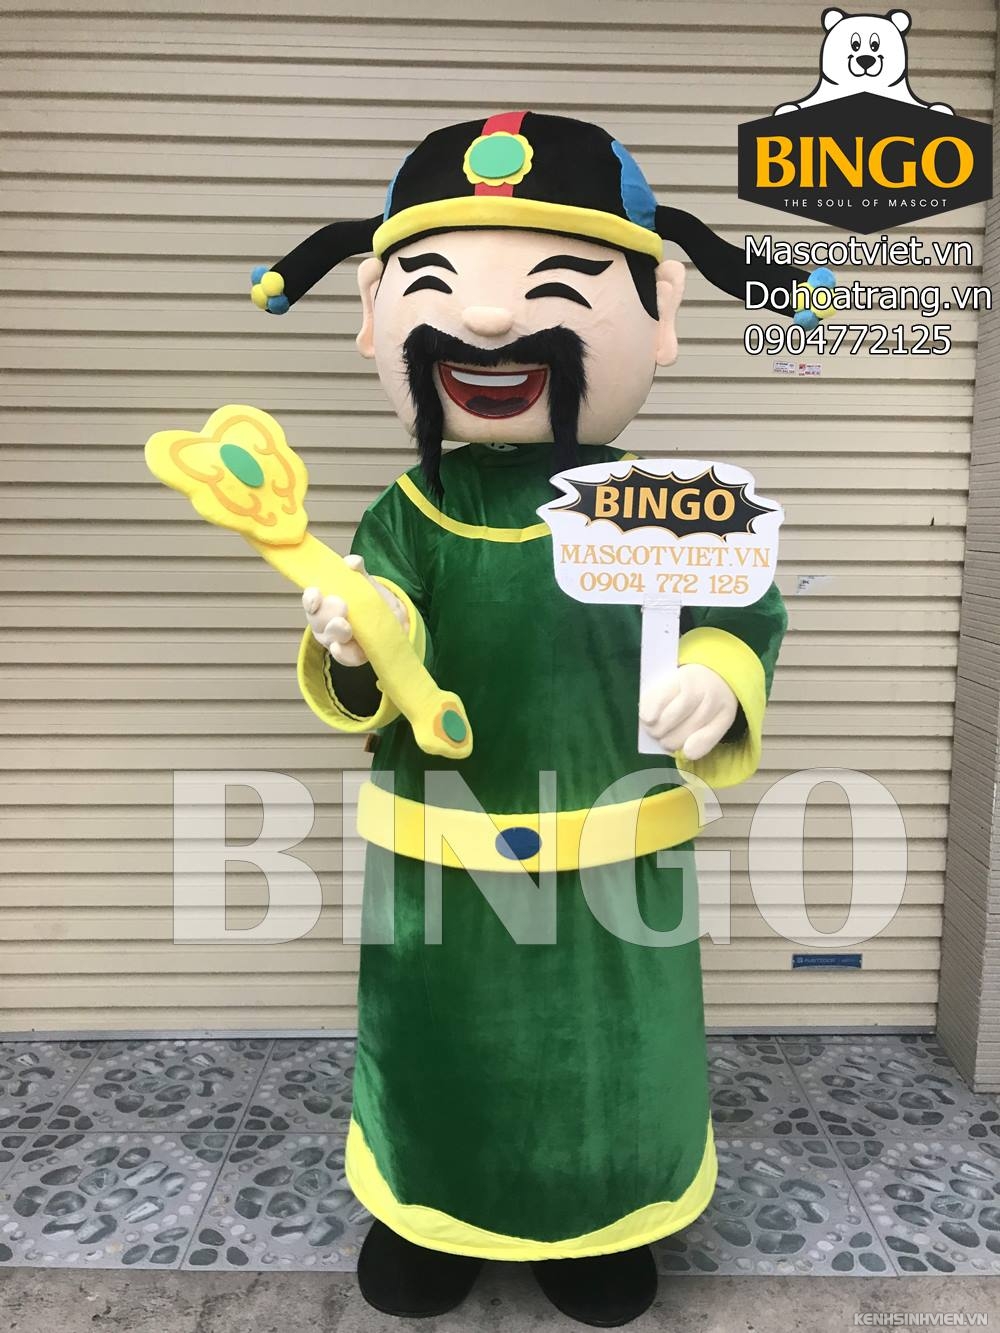 mascot-ong-loc-bingo-costumes-0904772125.jpg